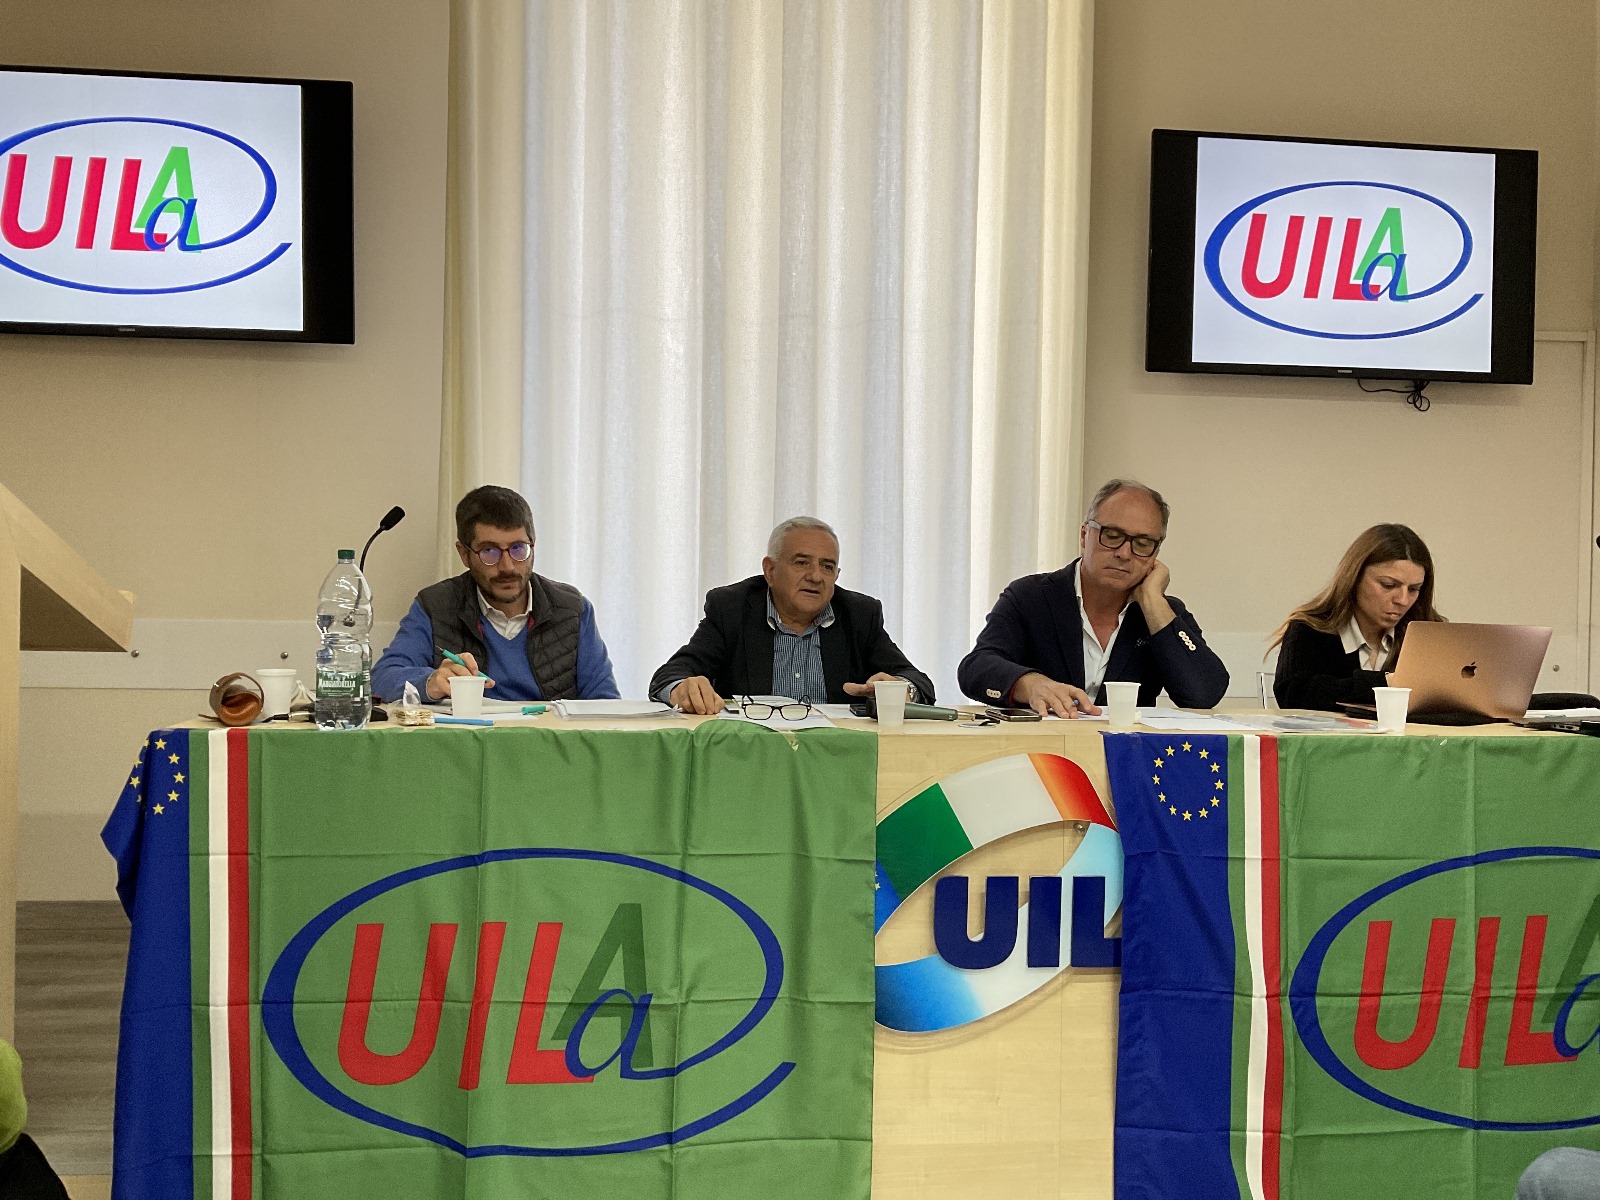 Regione: la Uila a Schifani: “L’interim all’Agricoltura non diventi un alibi”